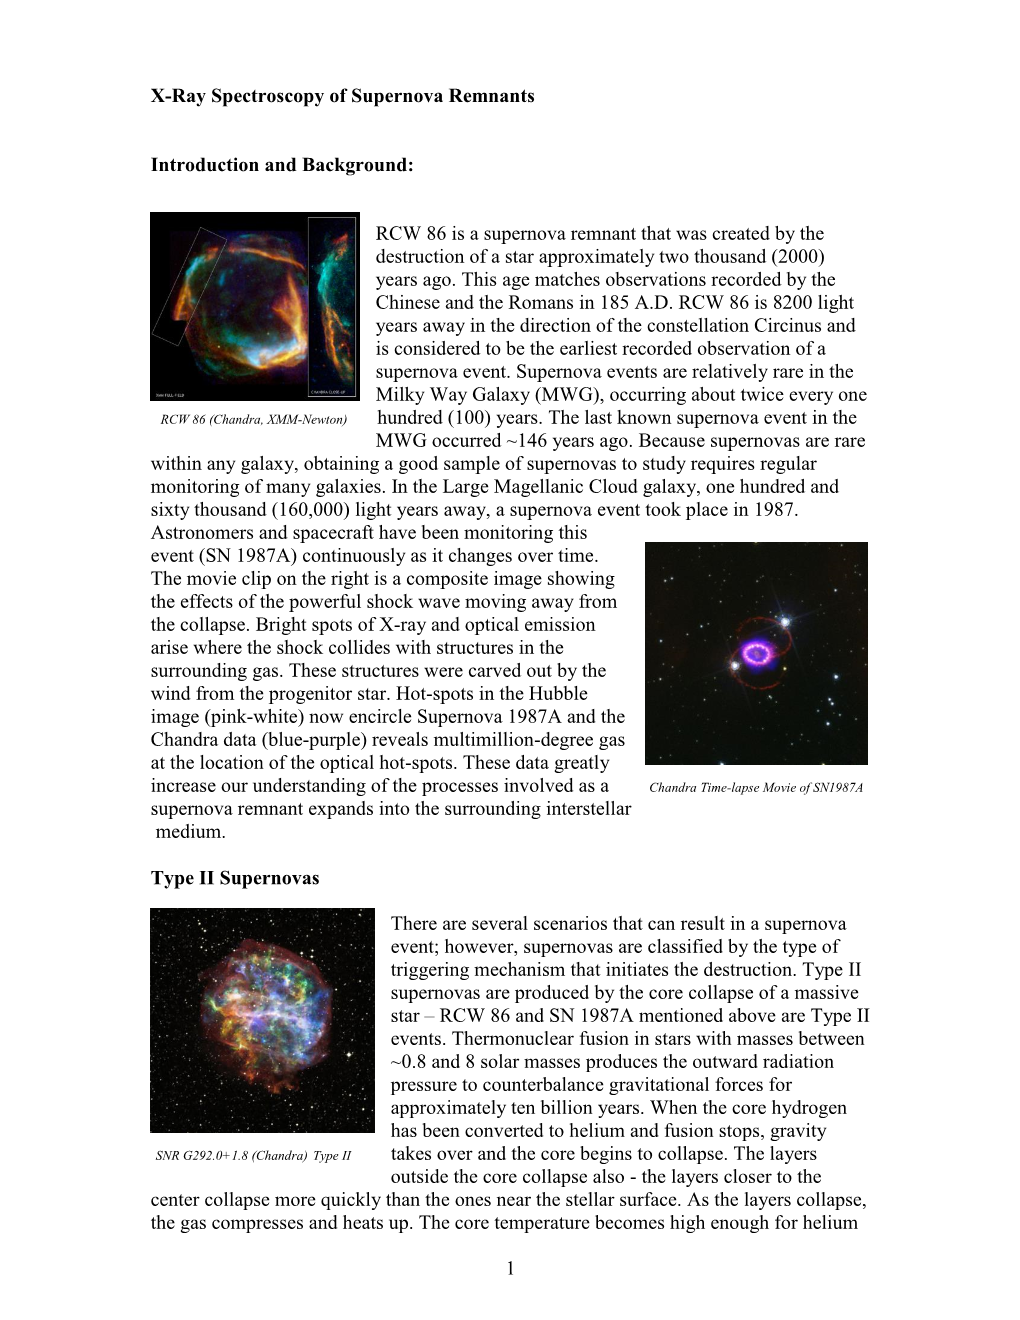 Investigating Supernova Remnants